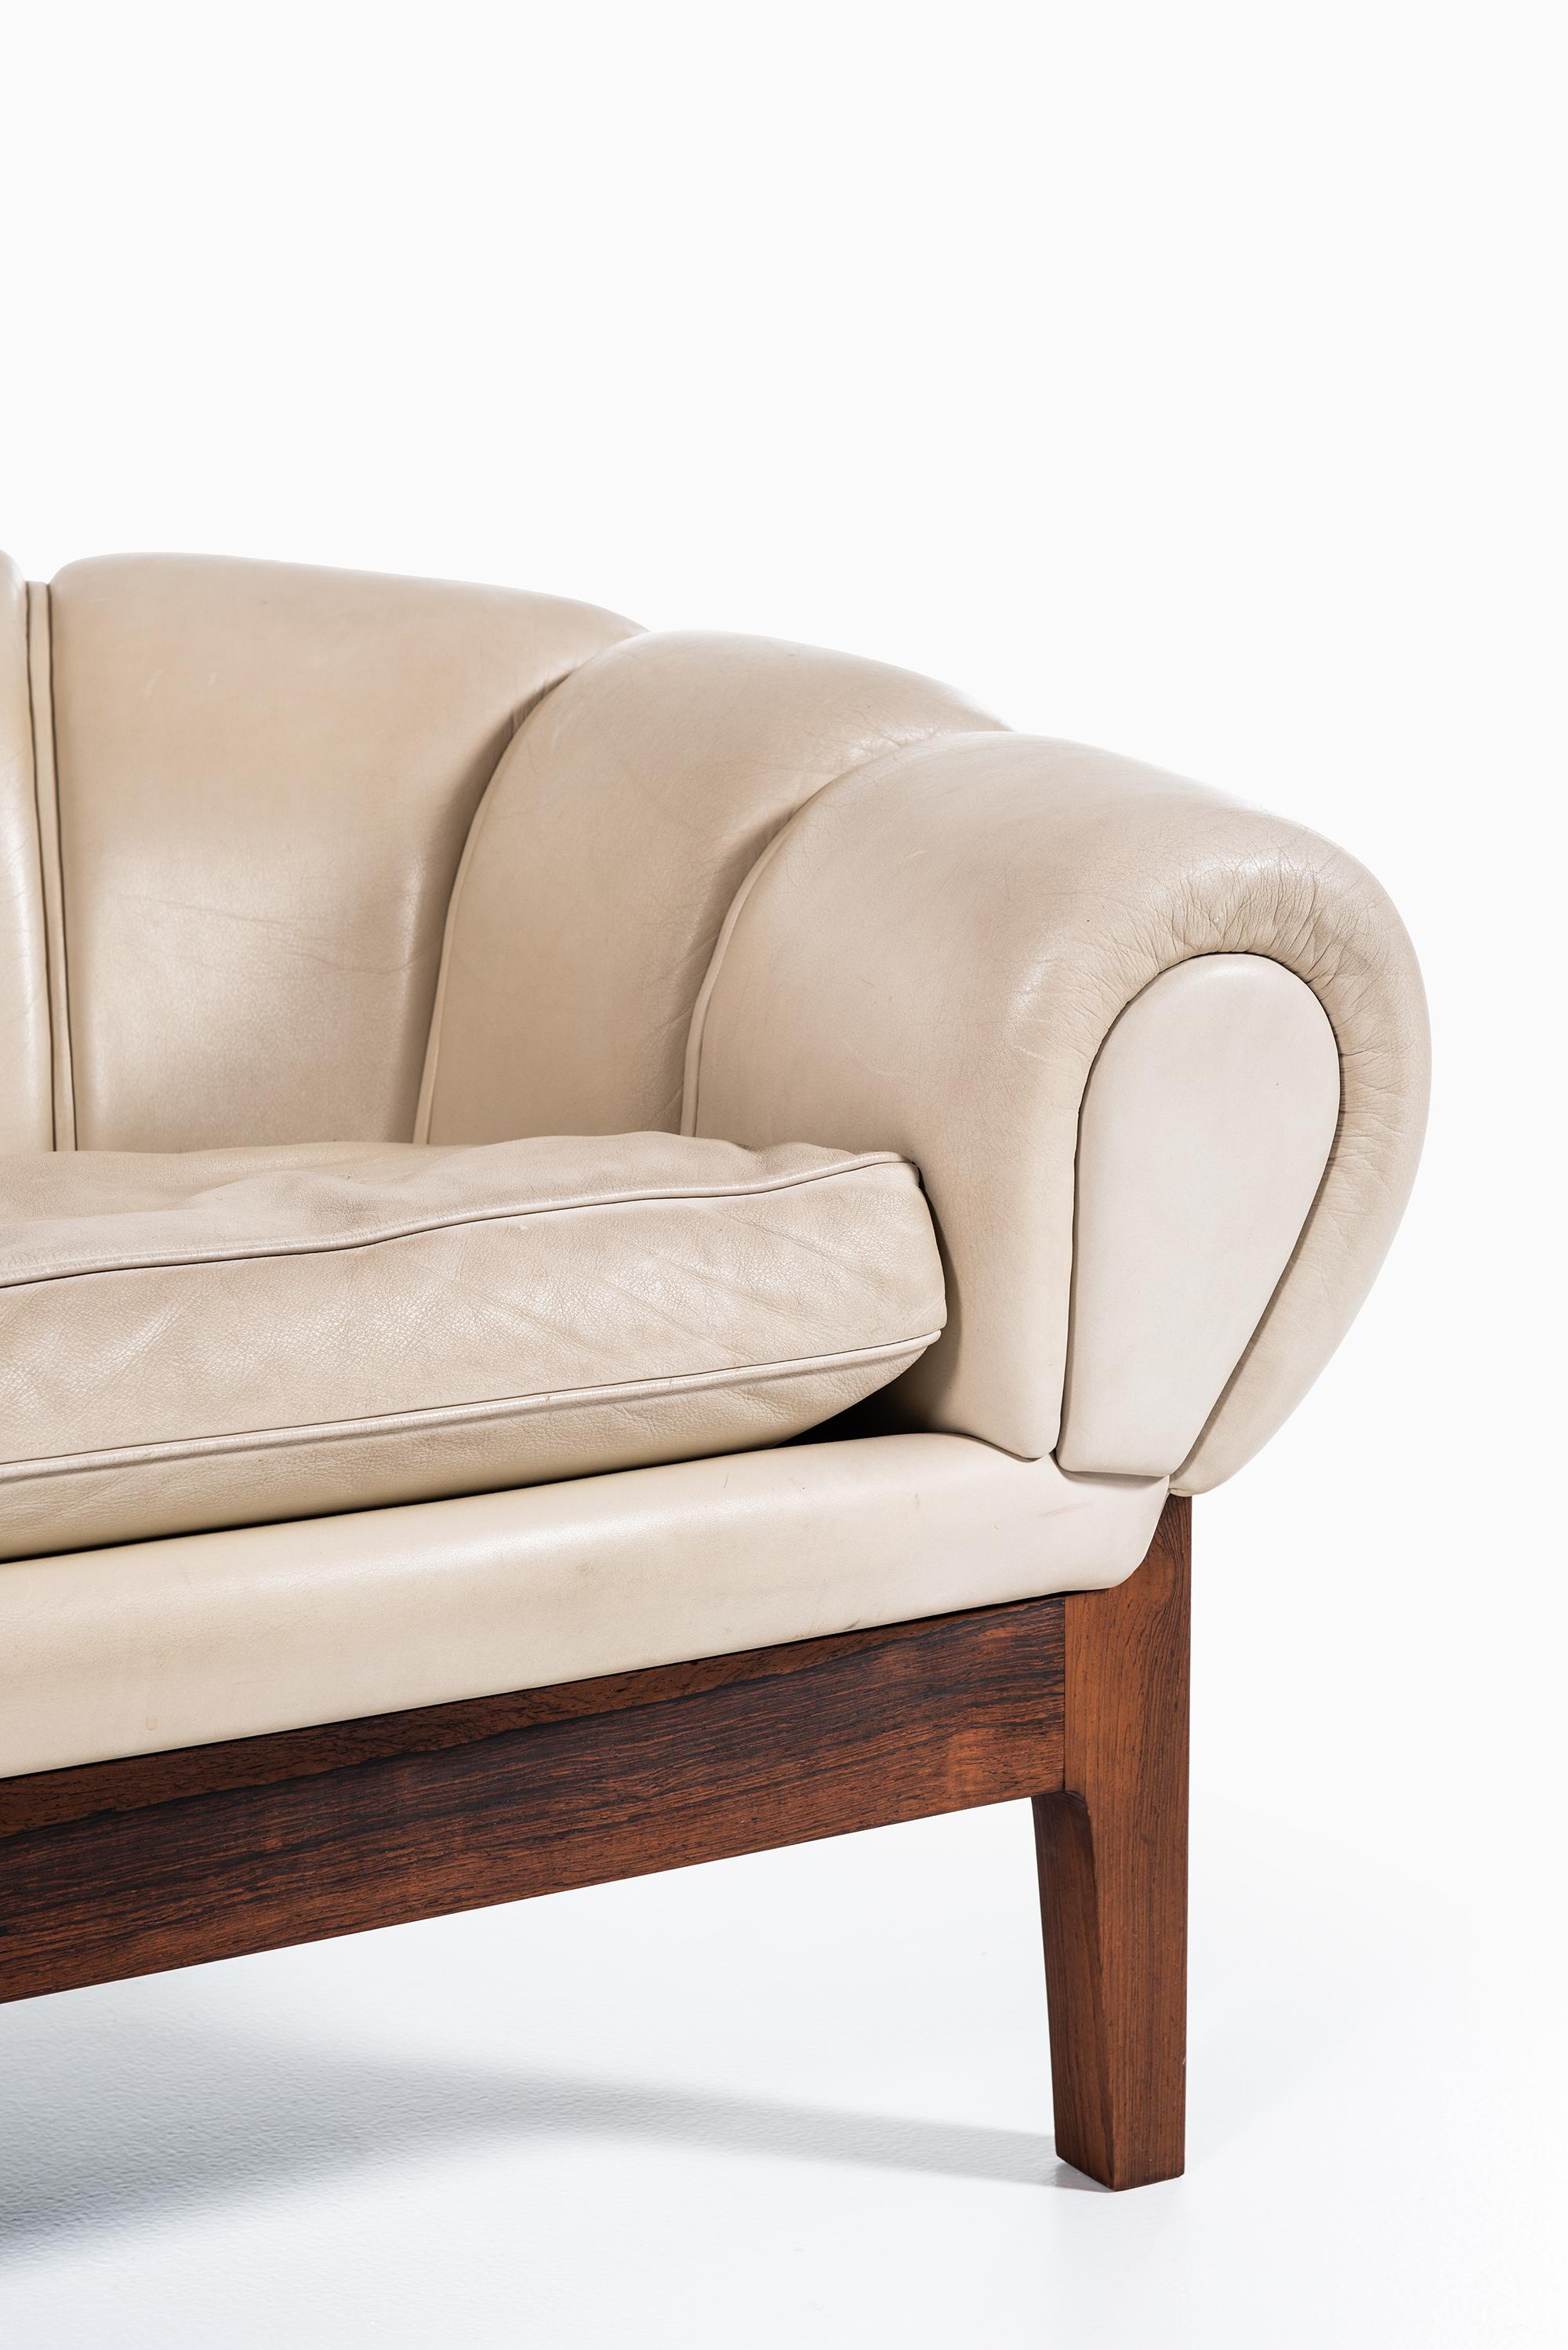 Very rare sofa model croissant designed by Illum Wikkelsø. Produced by Holger Christiansen in Denmark.